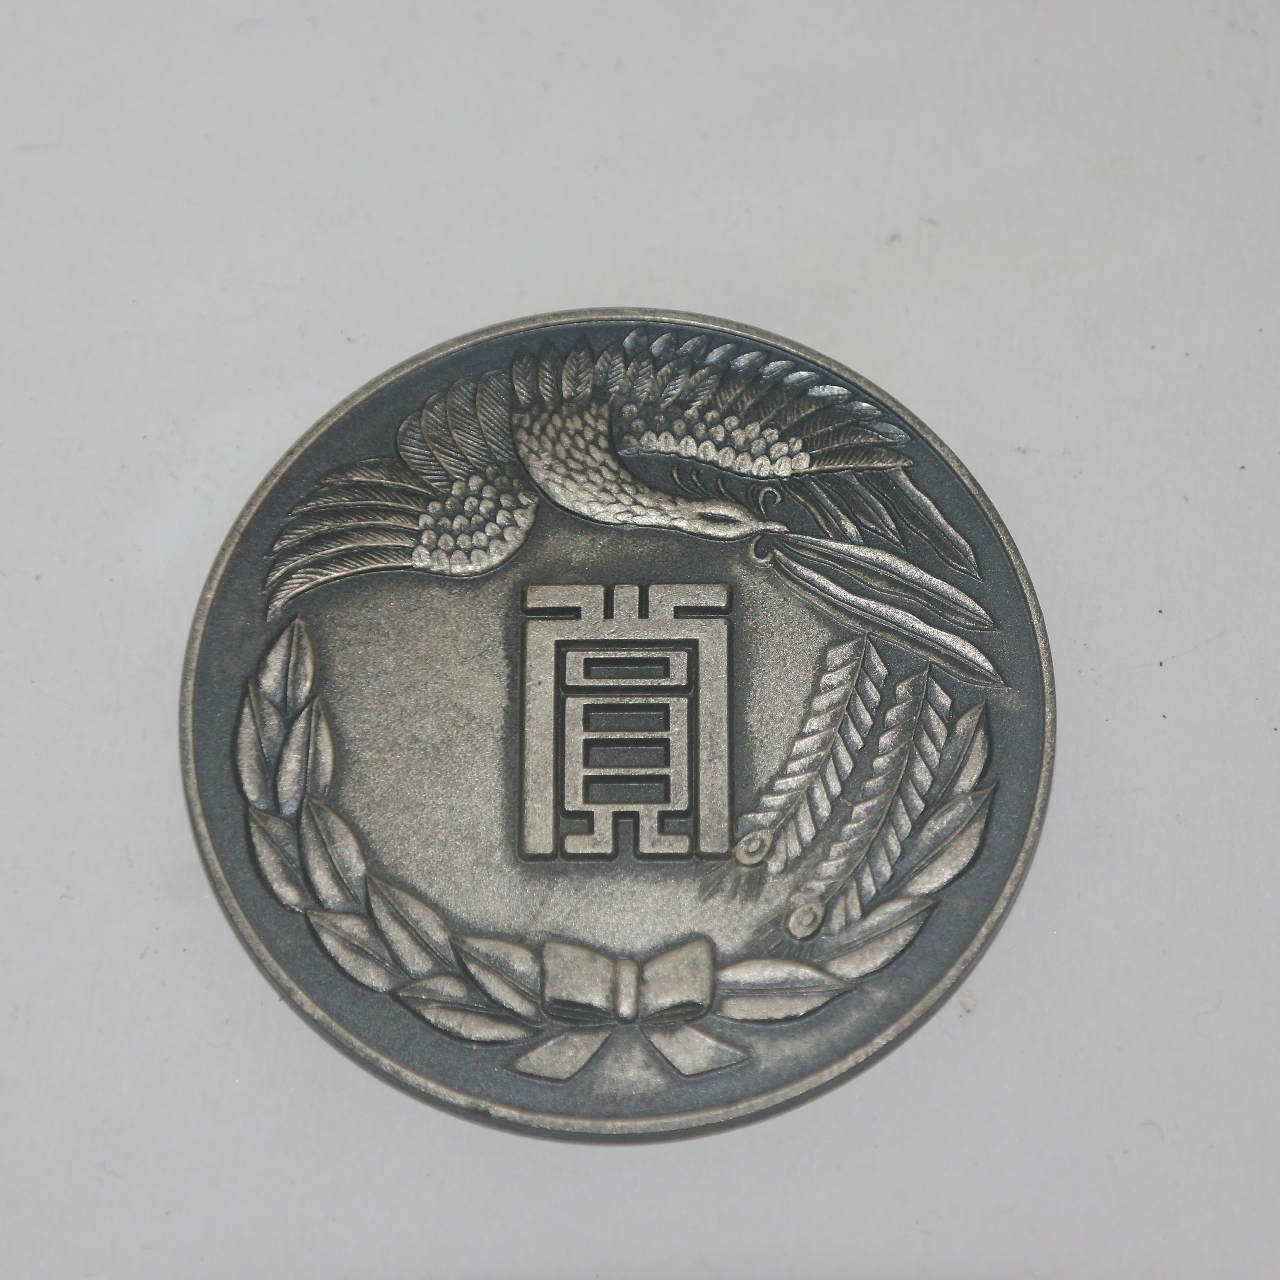 1969년 주석합금재질로된 상 메달